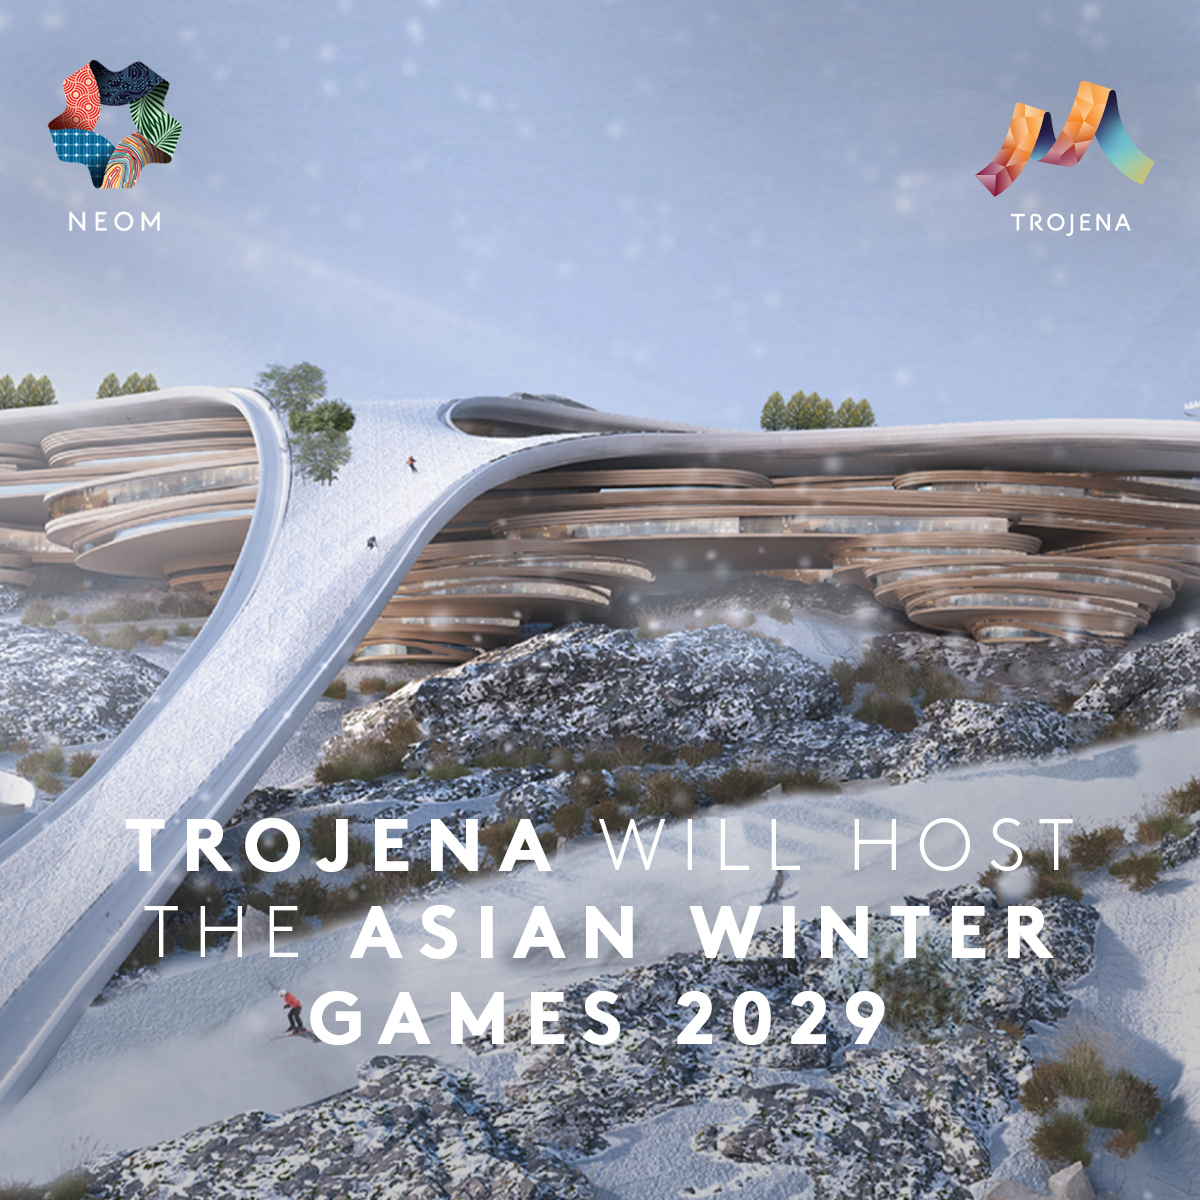 I Giochi Asiatici Invernali 2029 si terranno nel deserto dell'Arabia Saudita